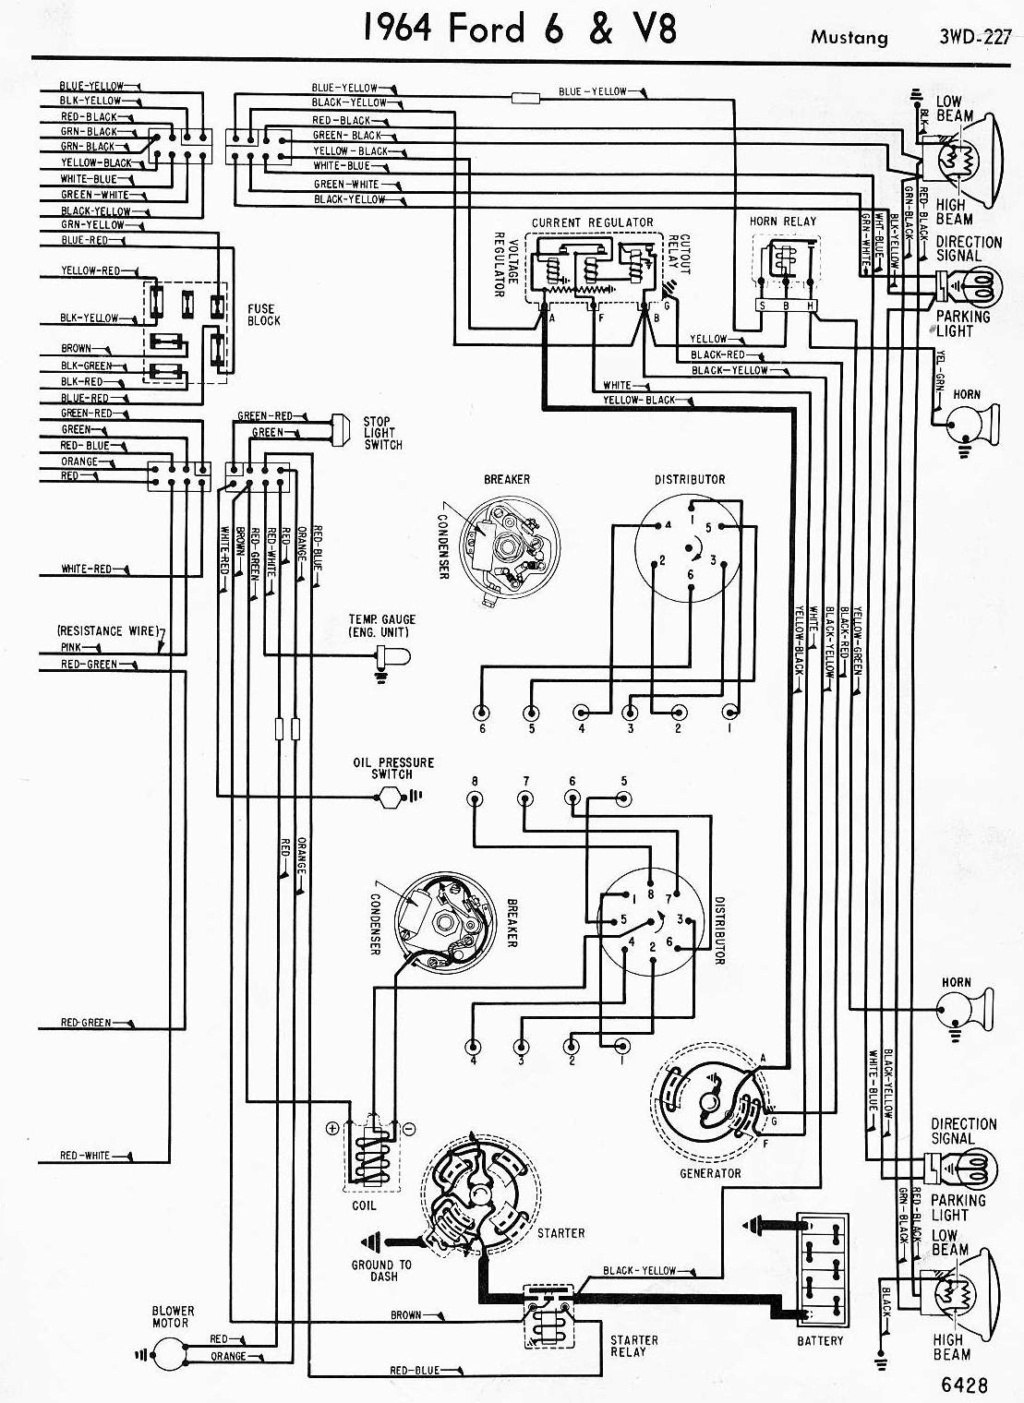 Schéma et diagramme électrique pour la Mustang 1964.5 (en anglais) 1964_m11